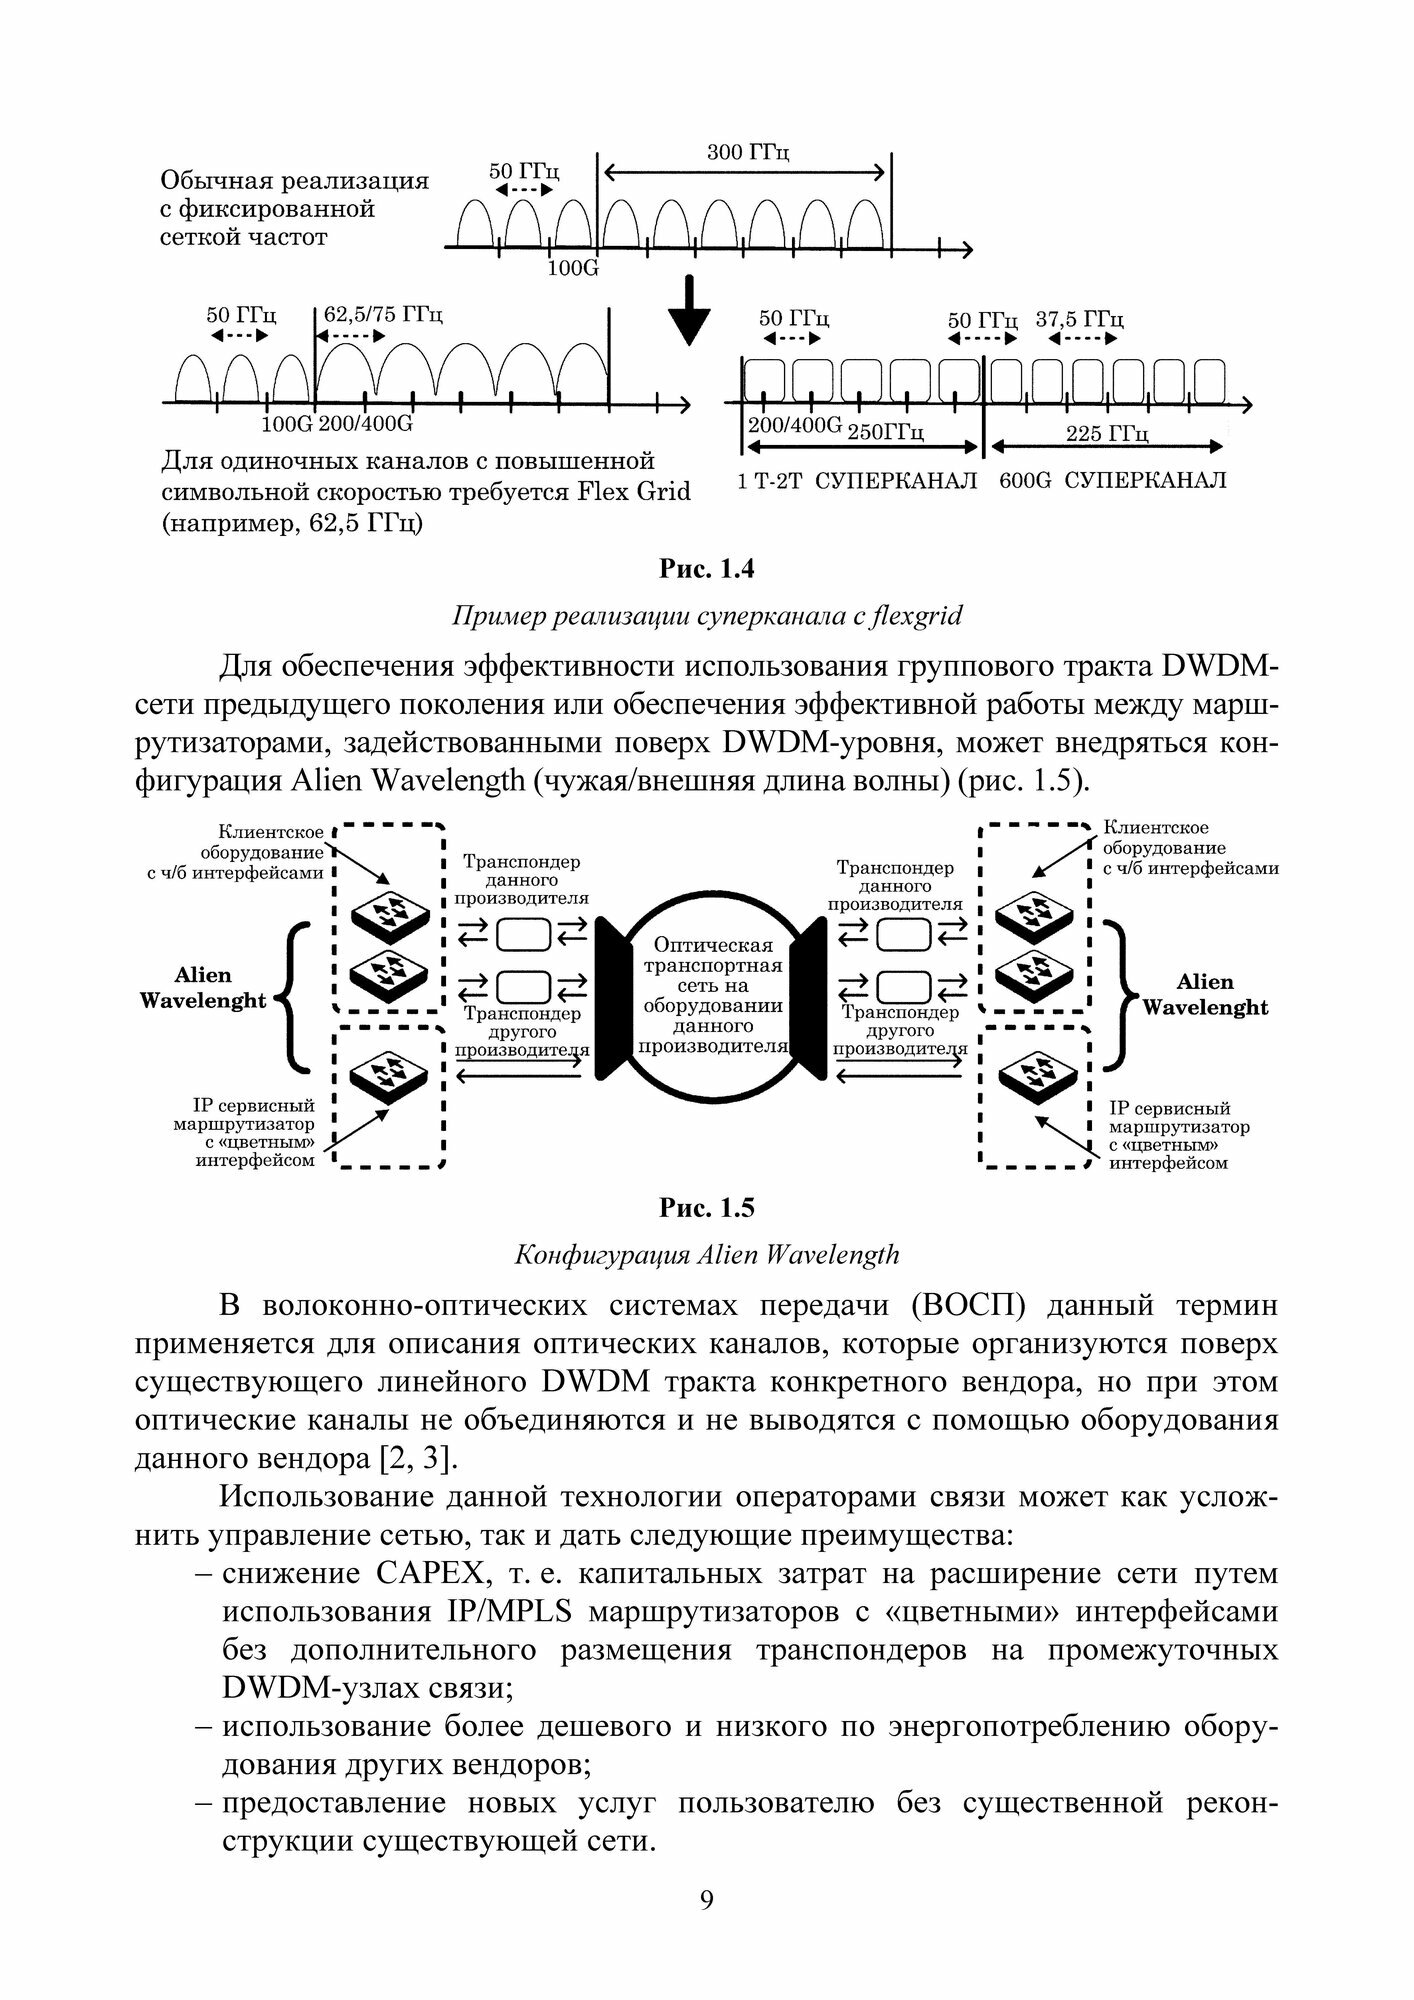 Проектирование современных оптических транспортных сетей связи. Учебное пособие для вузов - фото №2